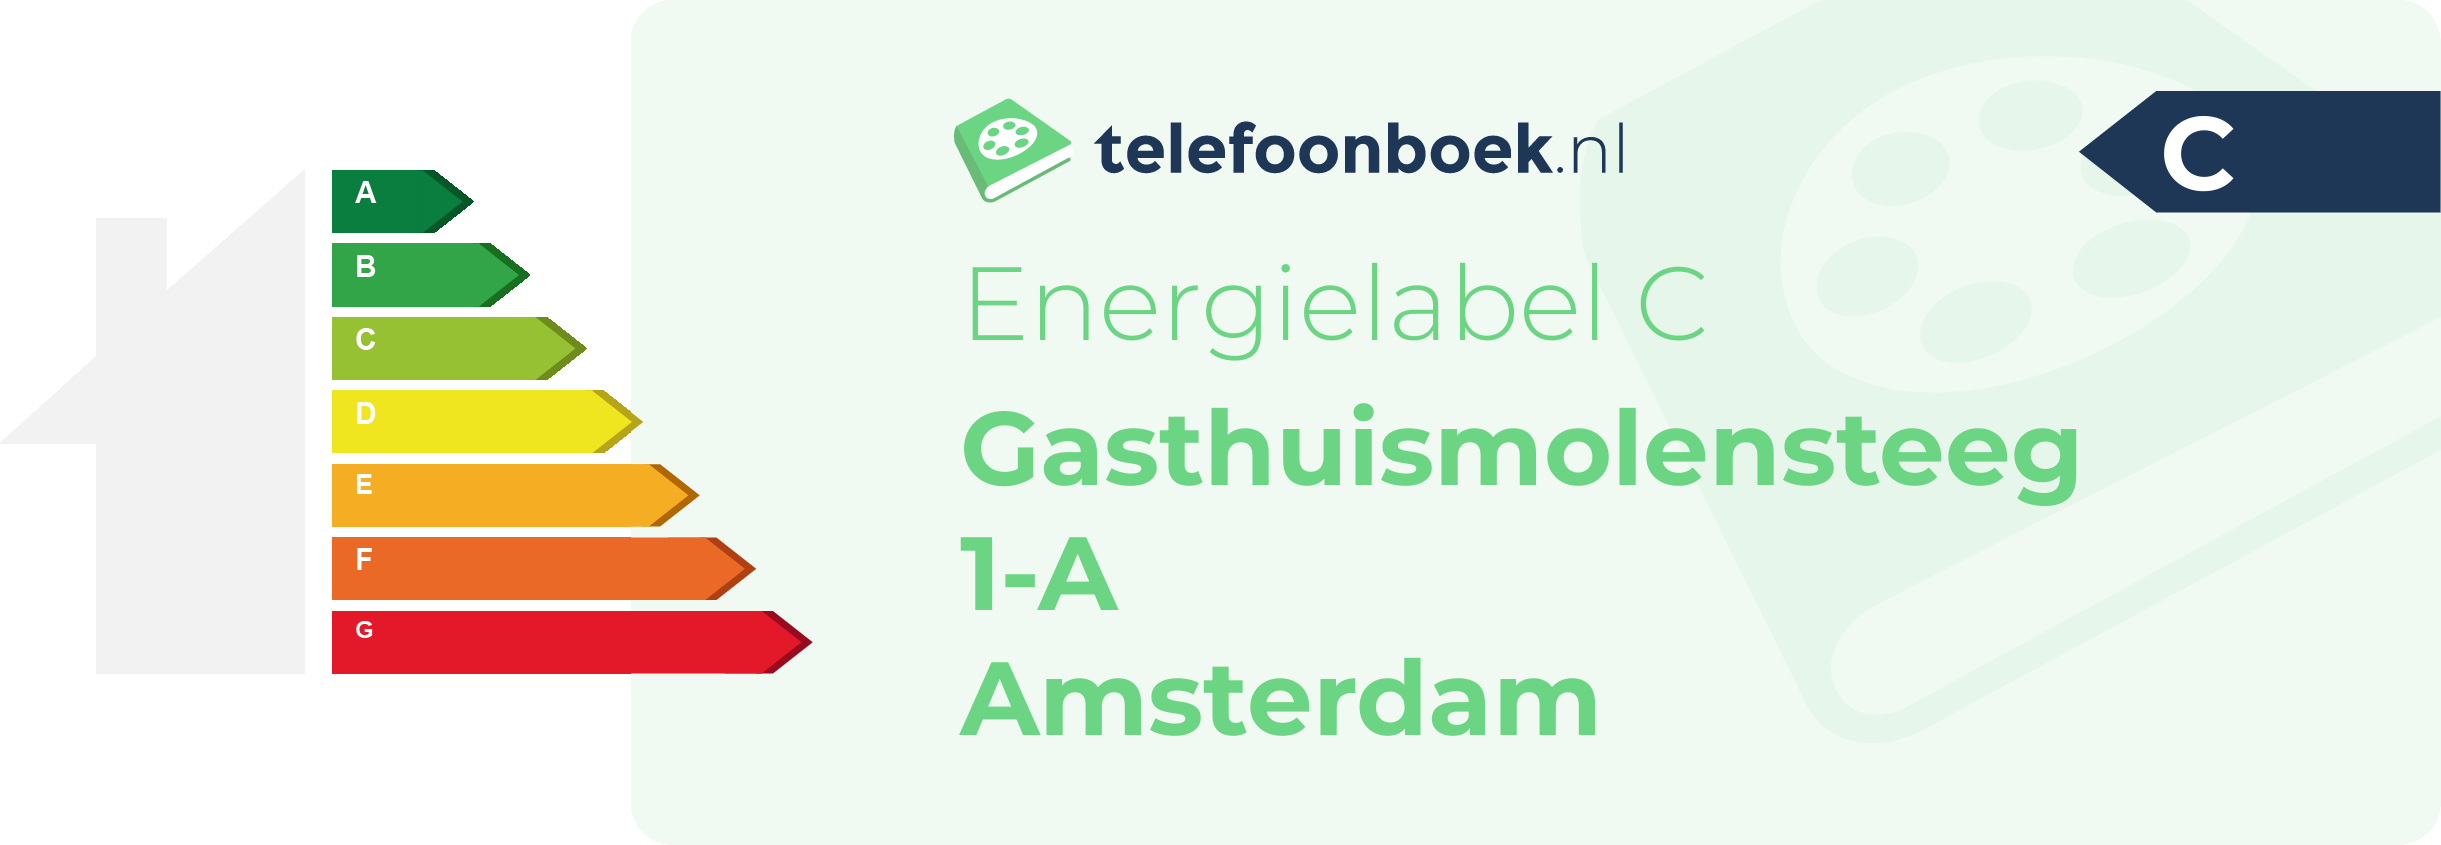 Energielabel Gasthuismolensteeg 1-A Amsterdam